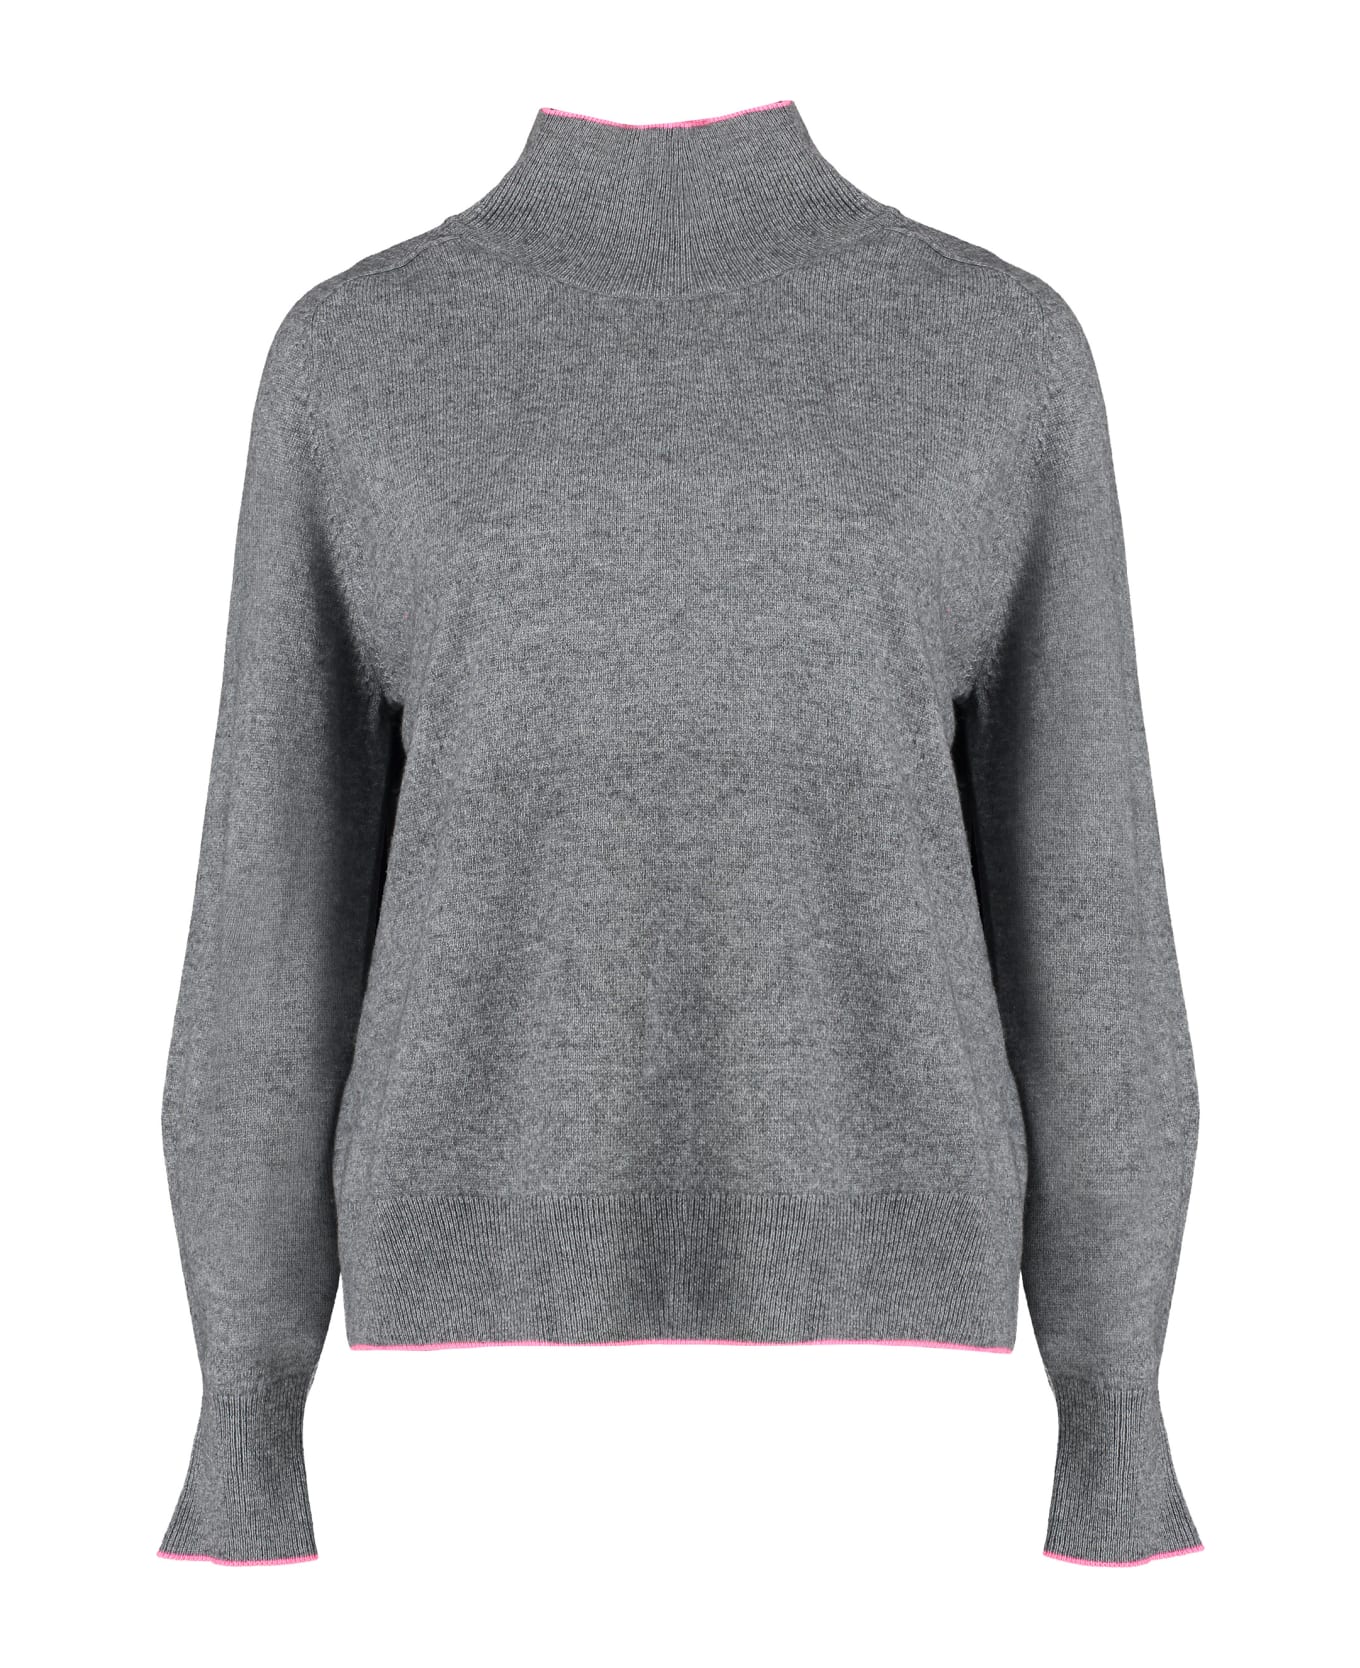 Pinko Wool Blend Turtleneck Sweater - Grey